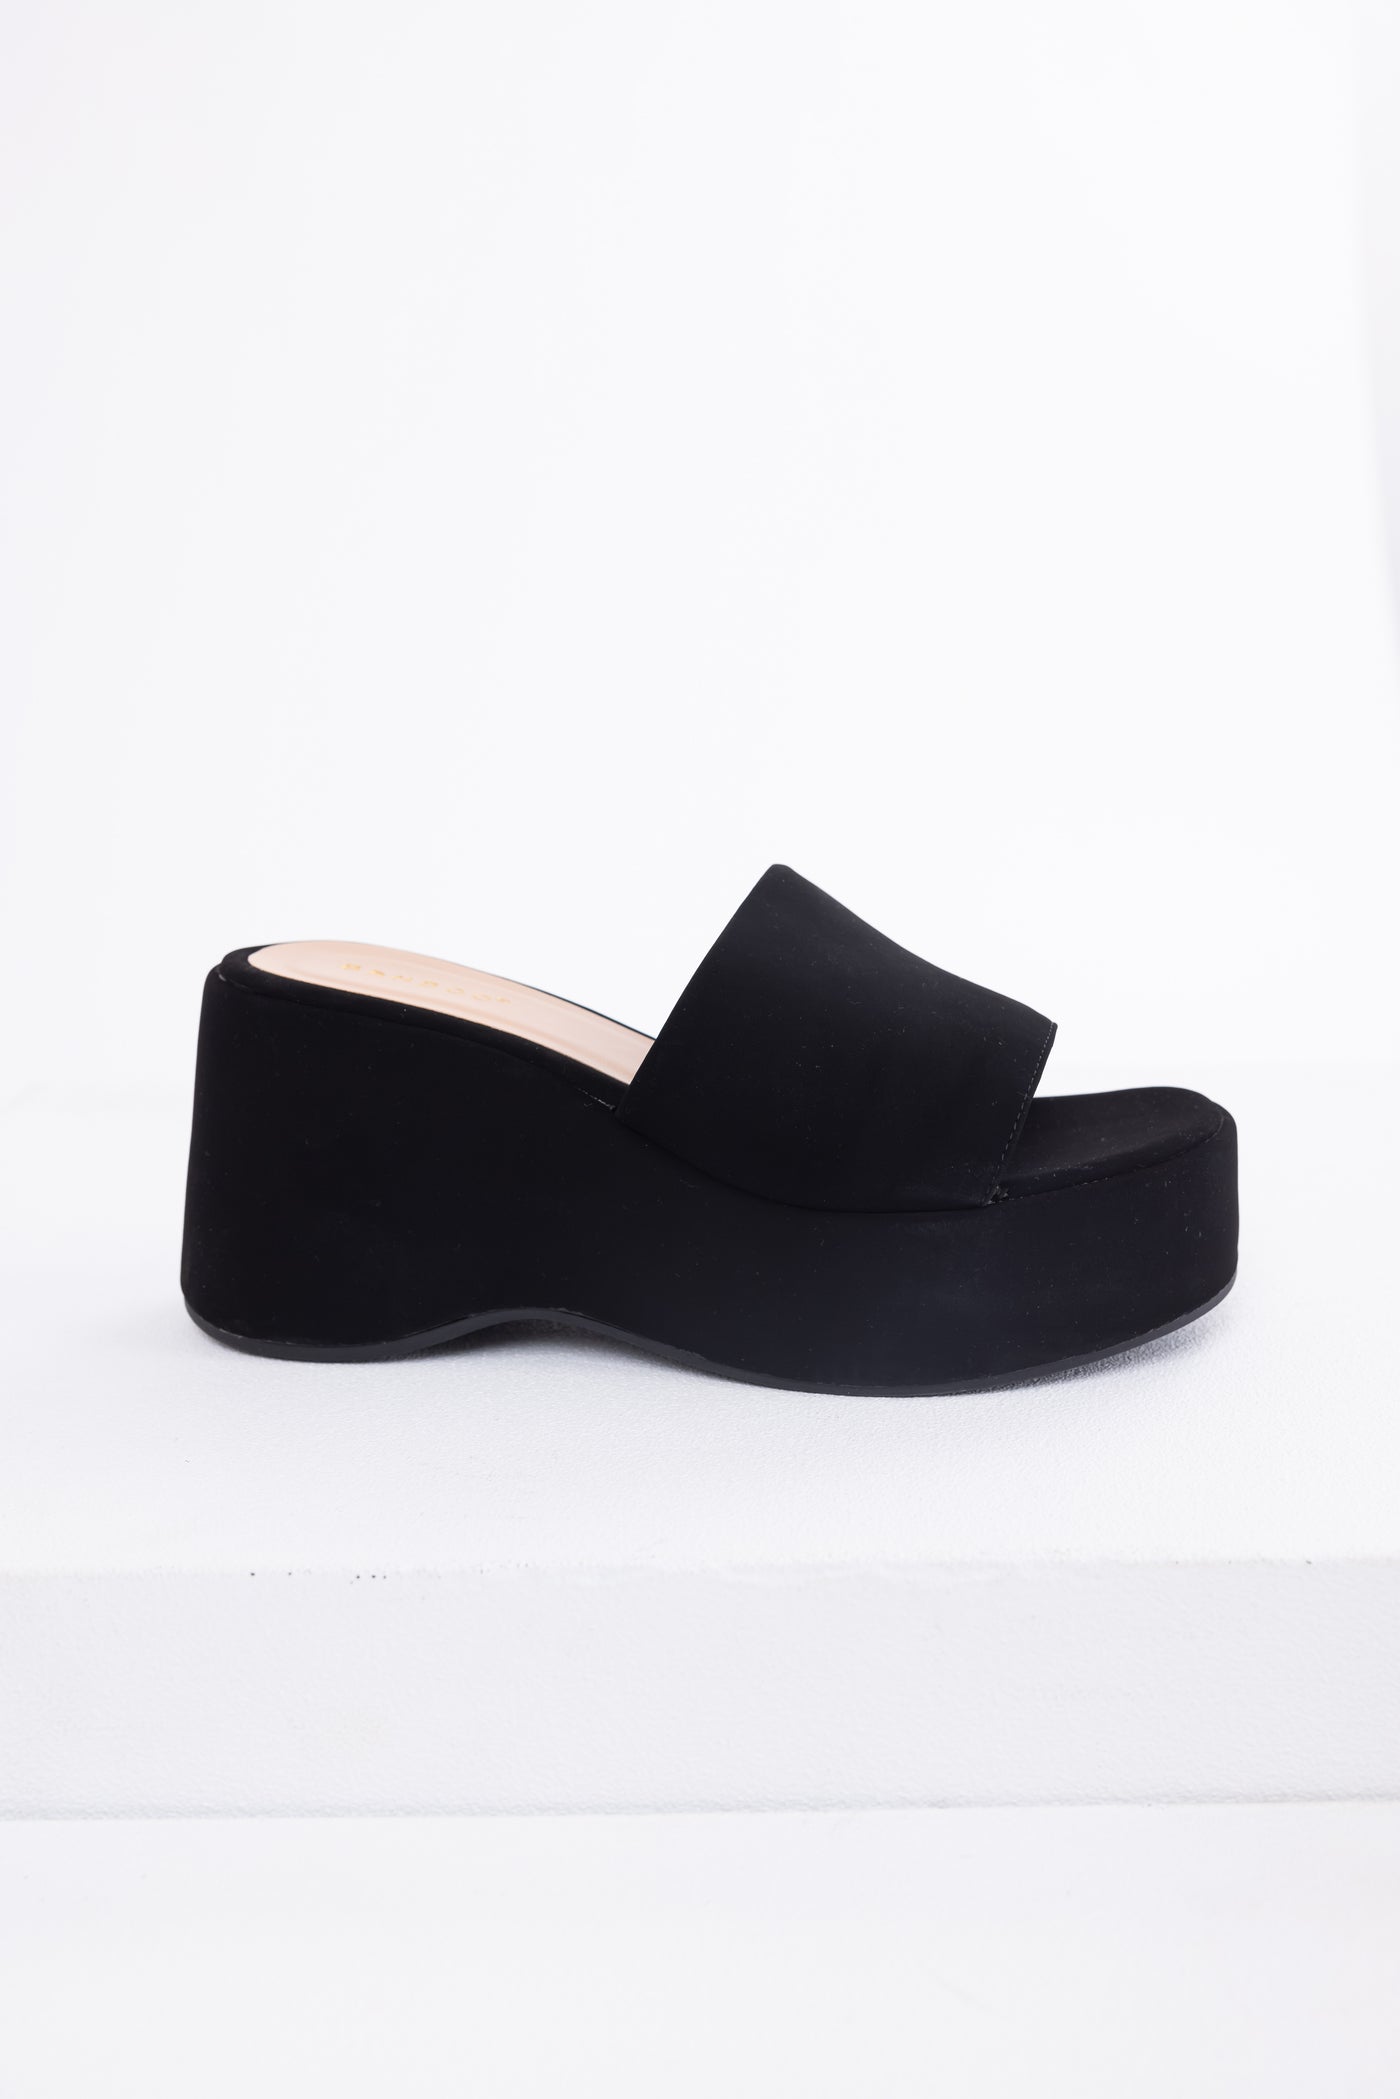 Black Soft Suede Platform Wedge Sandals